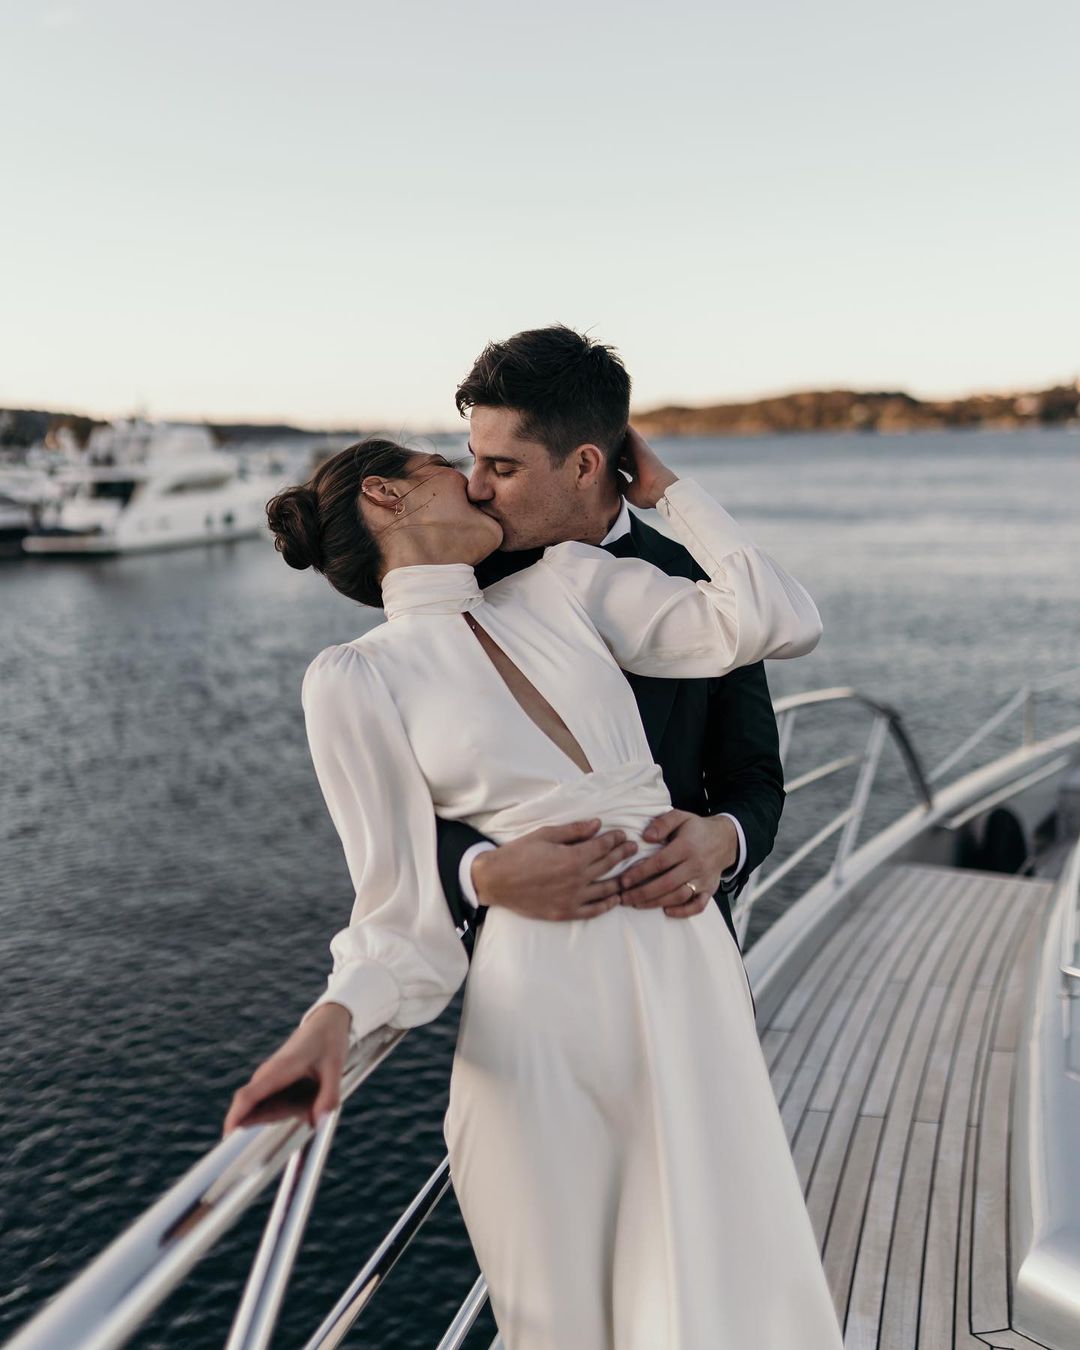 Novios compartiendo un beso en un barco, ejemplificando la unión de amor y tecnología en la organización de bodas digital.